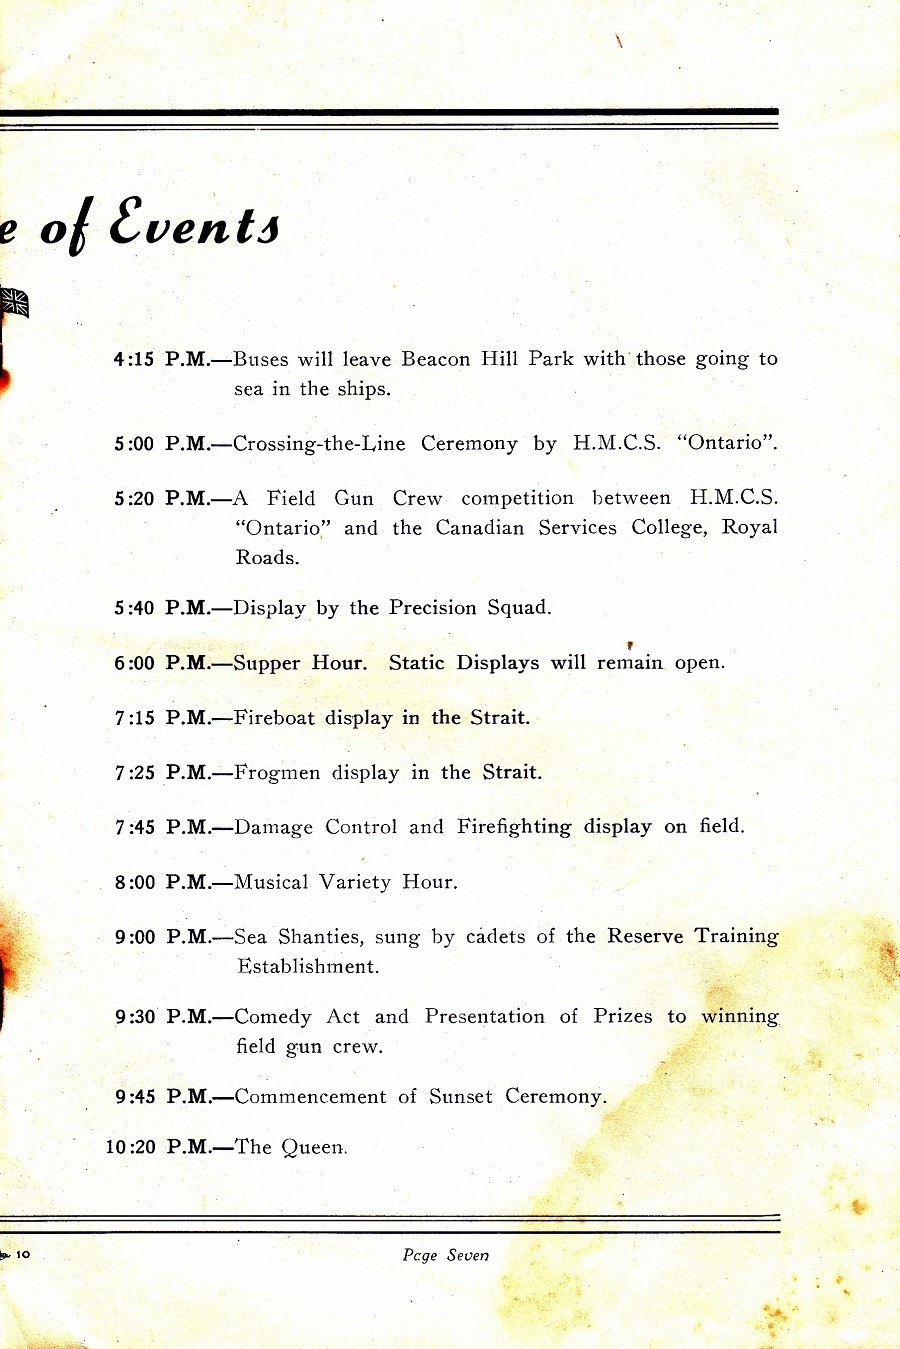 RCN NAVY DAYS 26 July 1952 - Page 7